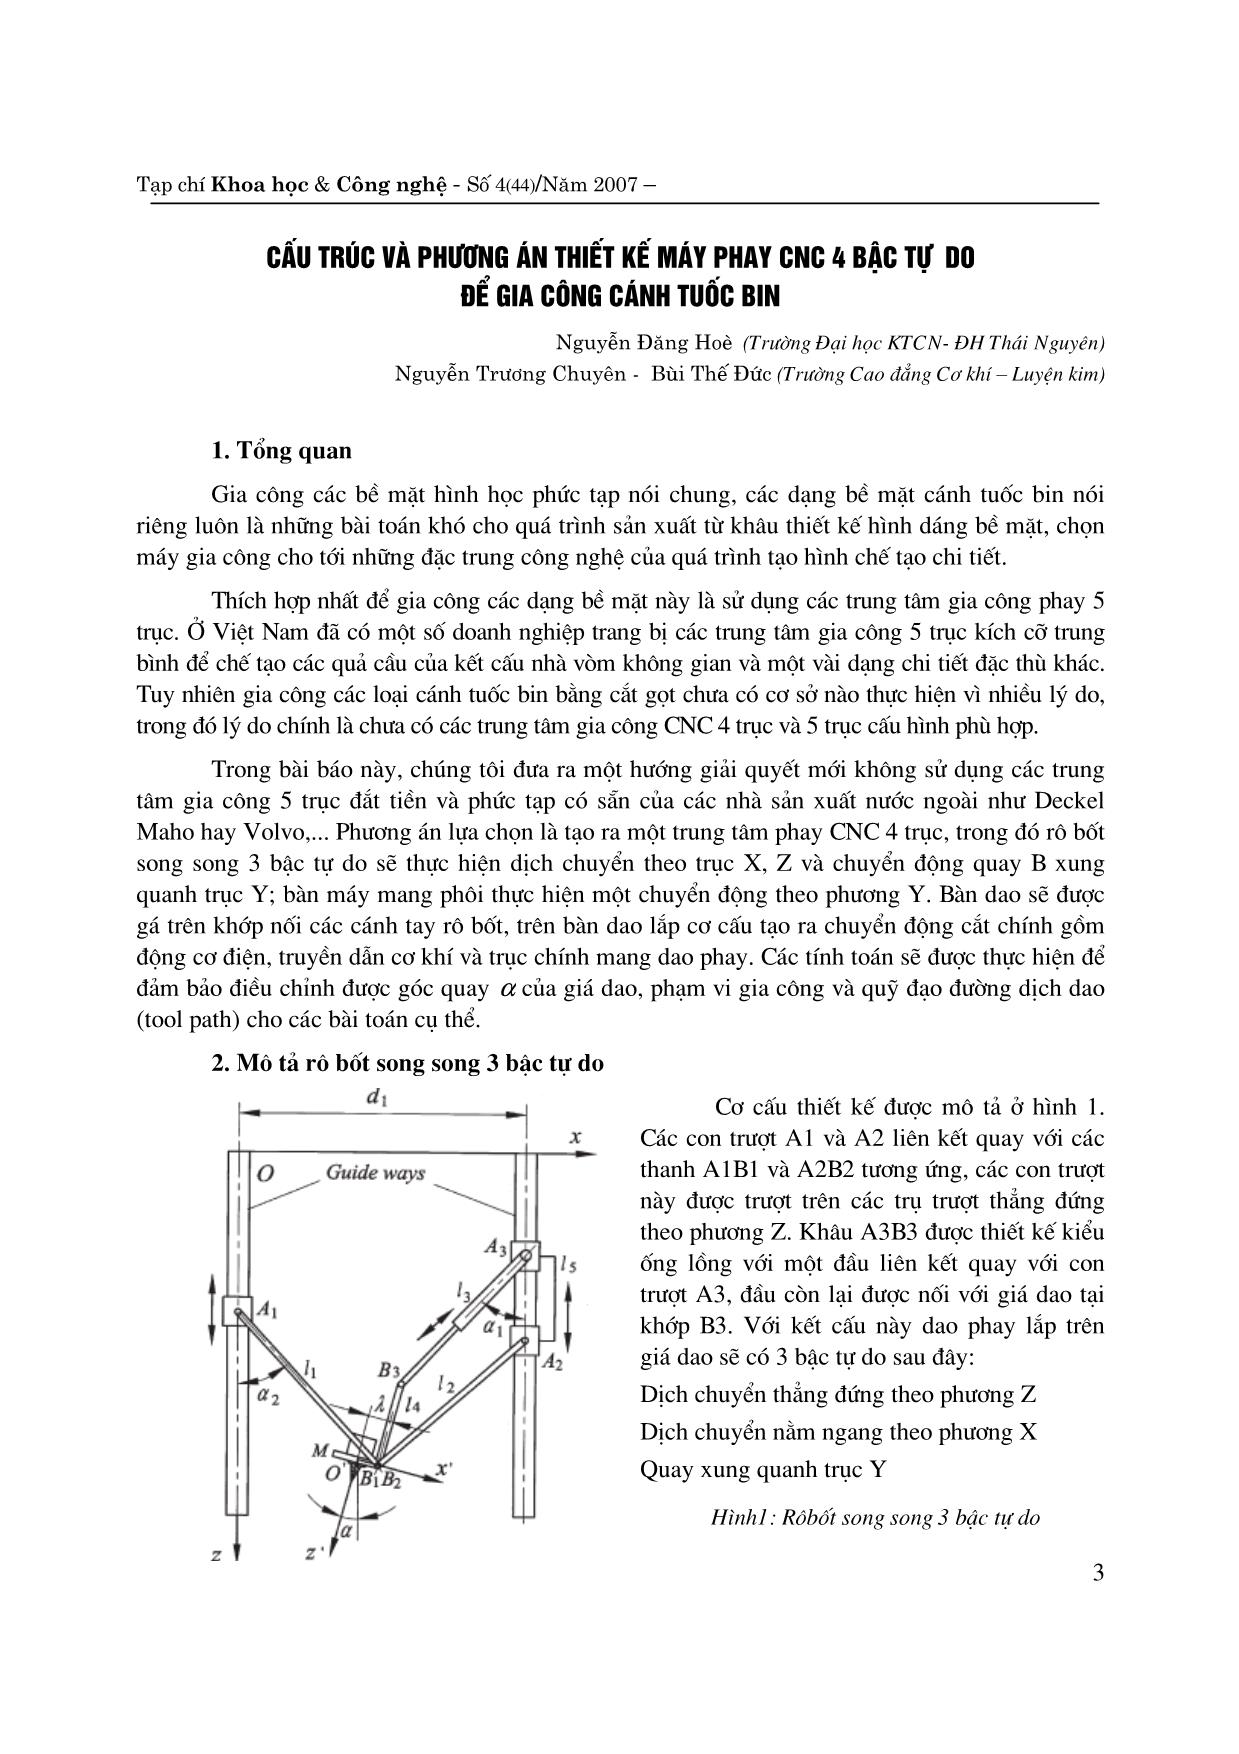 Cấu trúc và phương án thiết kế máy phay CNC 4 bậc tự do để gia công cánh tuốc bin trang 1